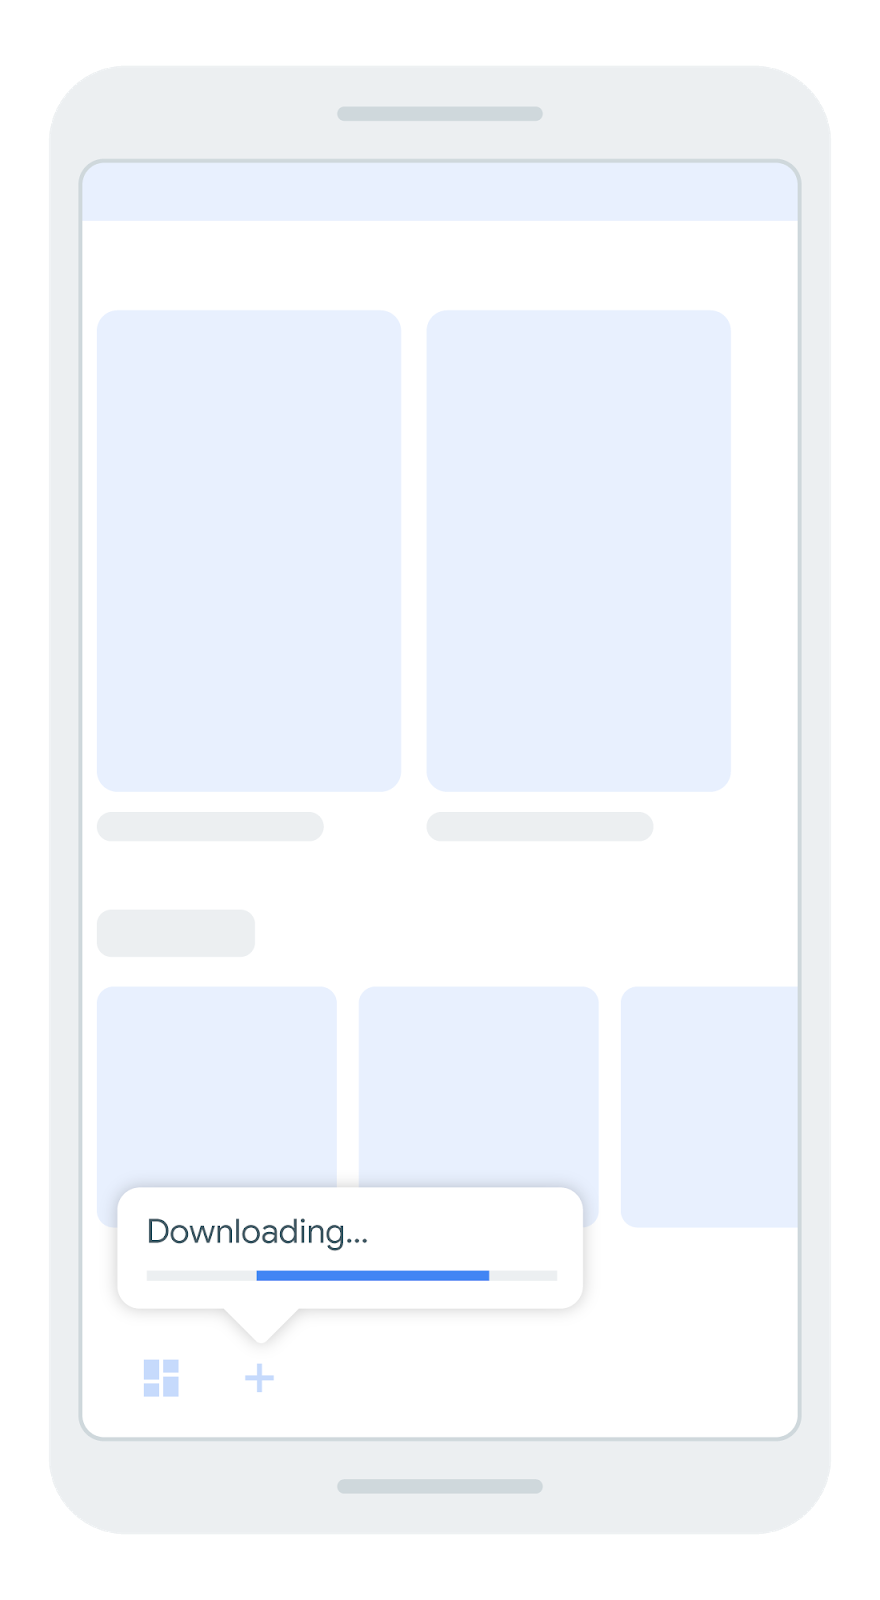 tela que mostra uma barra de navegação inferior com um ícone que indica
         o download de um módulo de recursos.